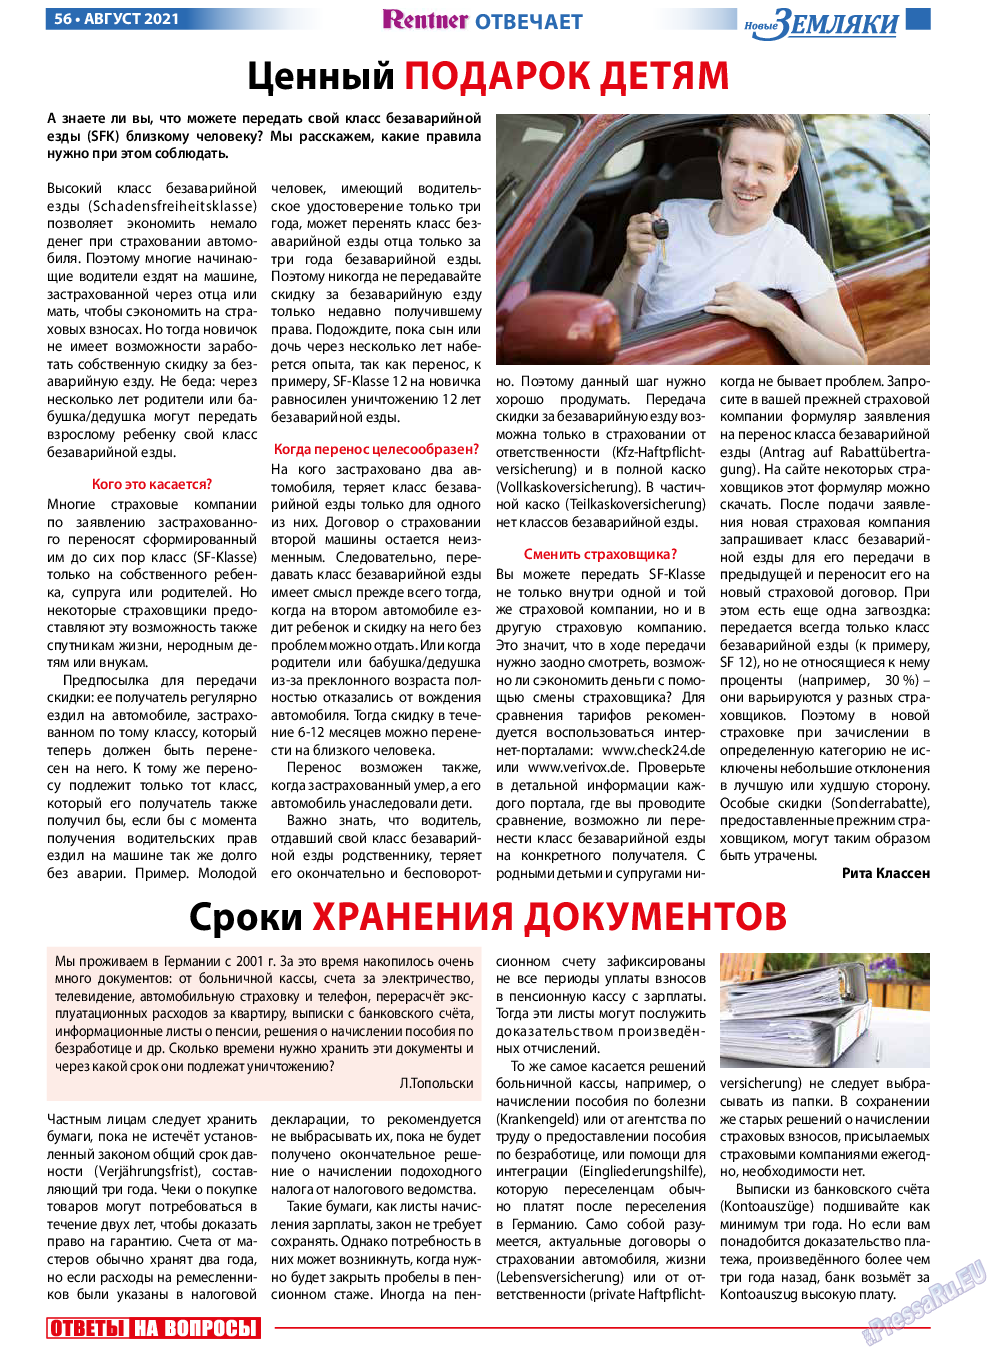 Новые Земляки, газета. 2021 №8 стр.56